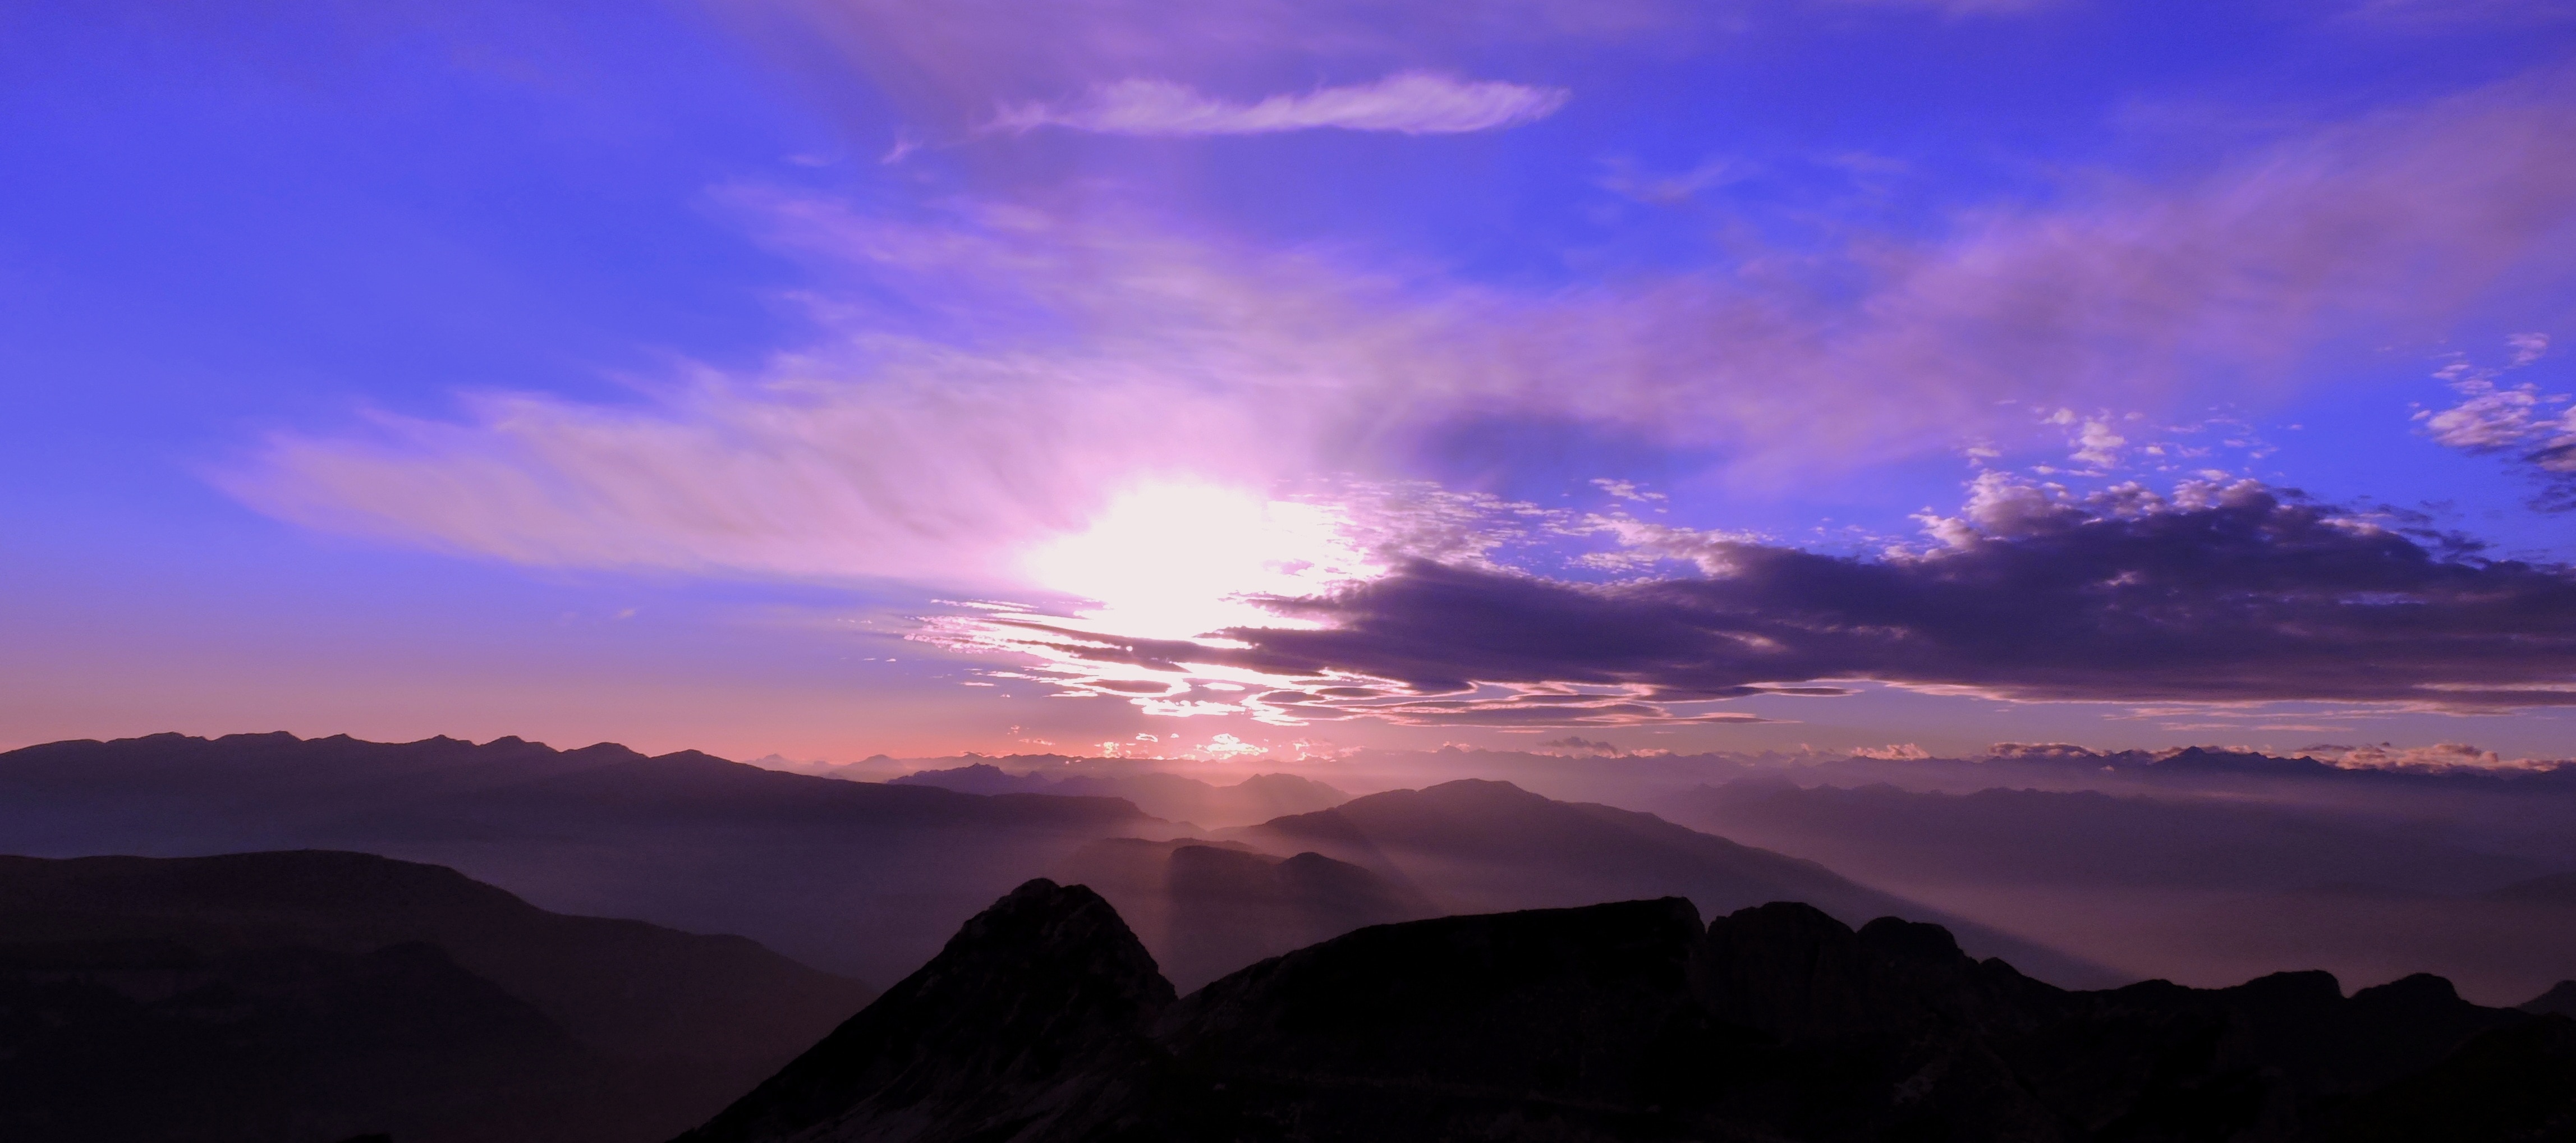 Mountain, Sunset, Sky, Cloud, Carega, cloud - sky, scenics